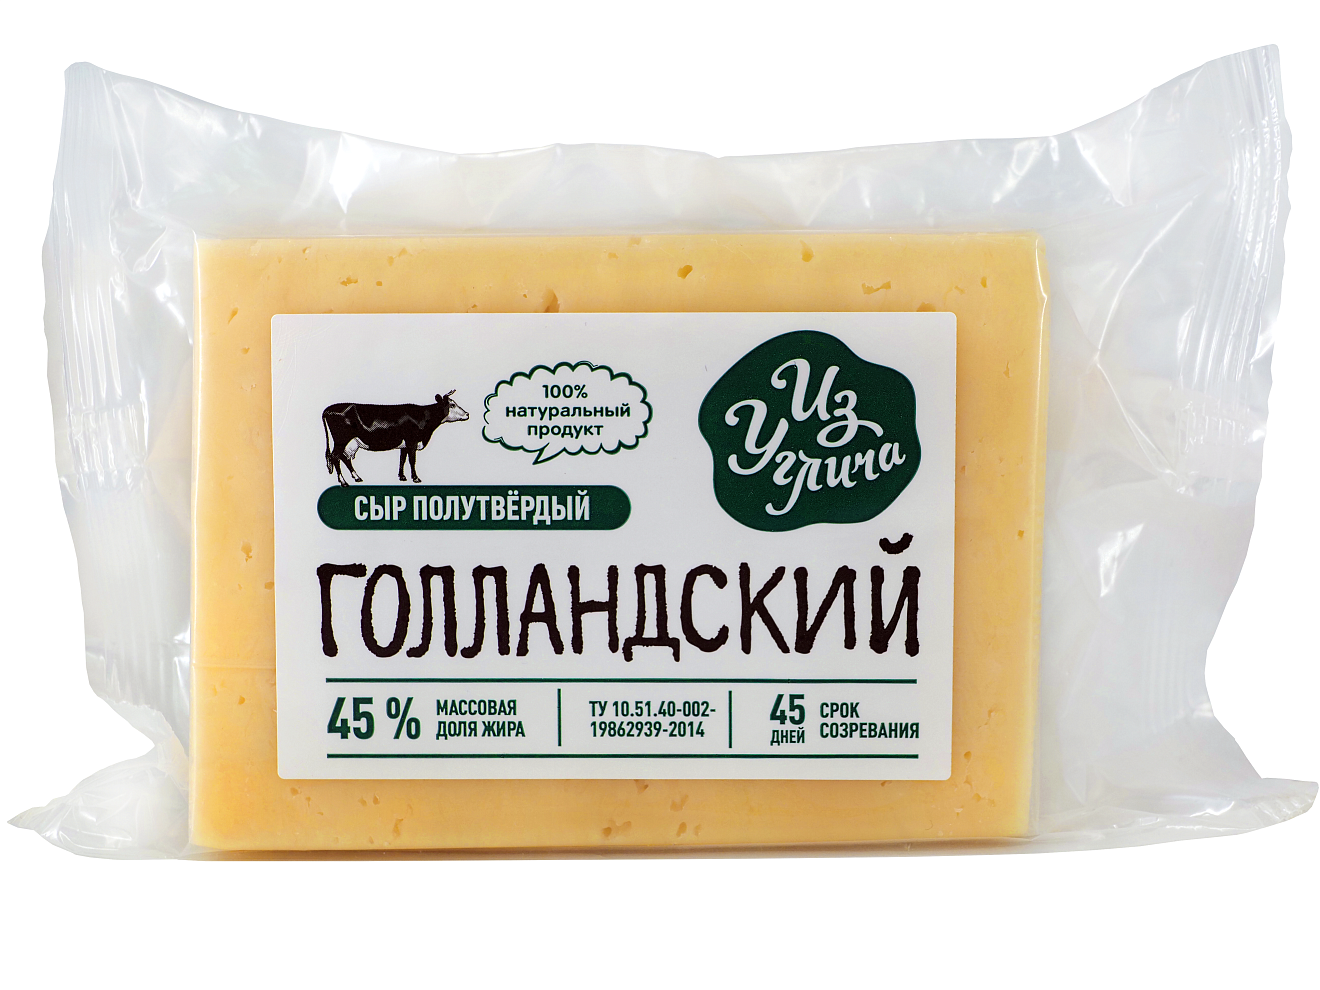 Сыр «Голландский» 45%